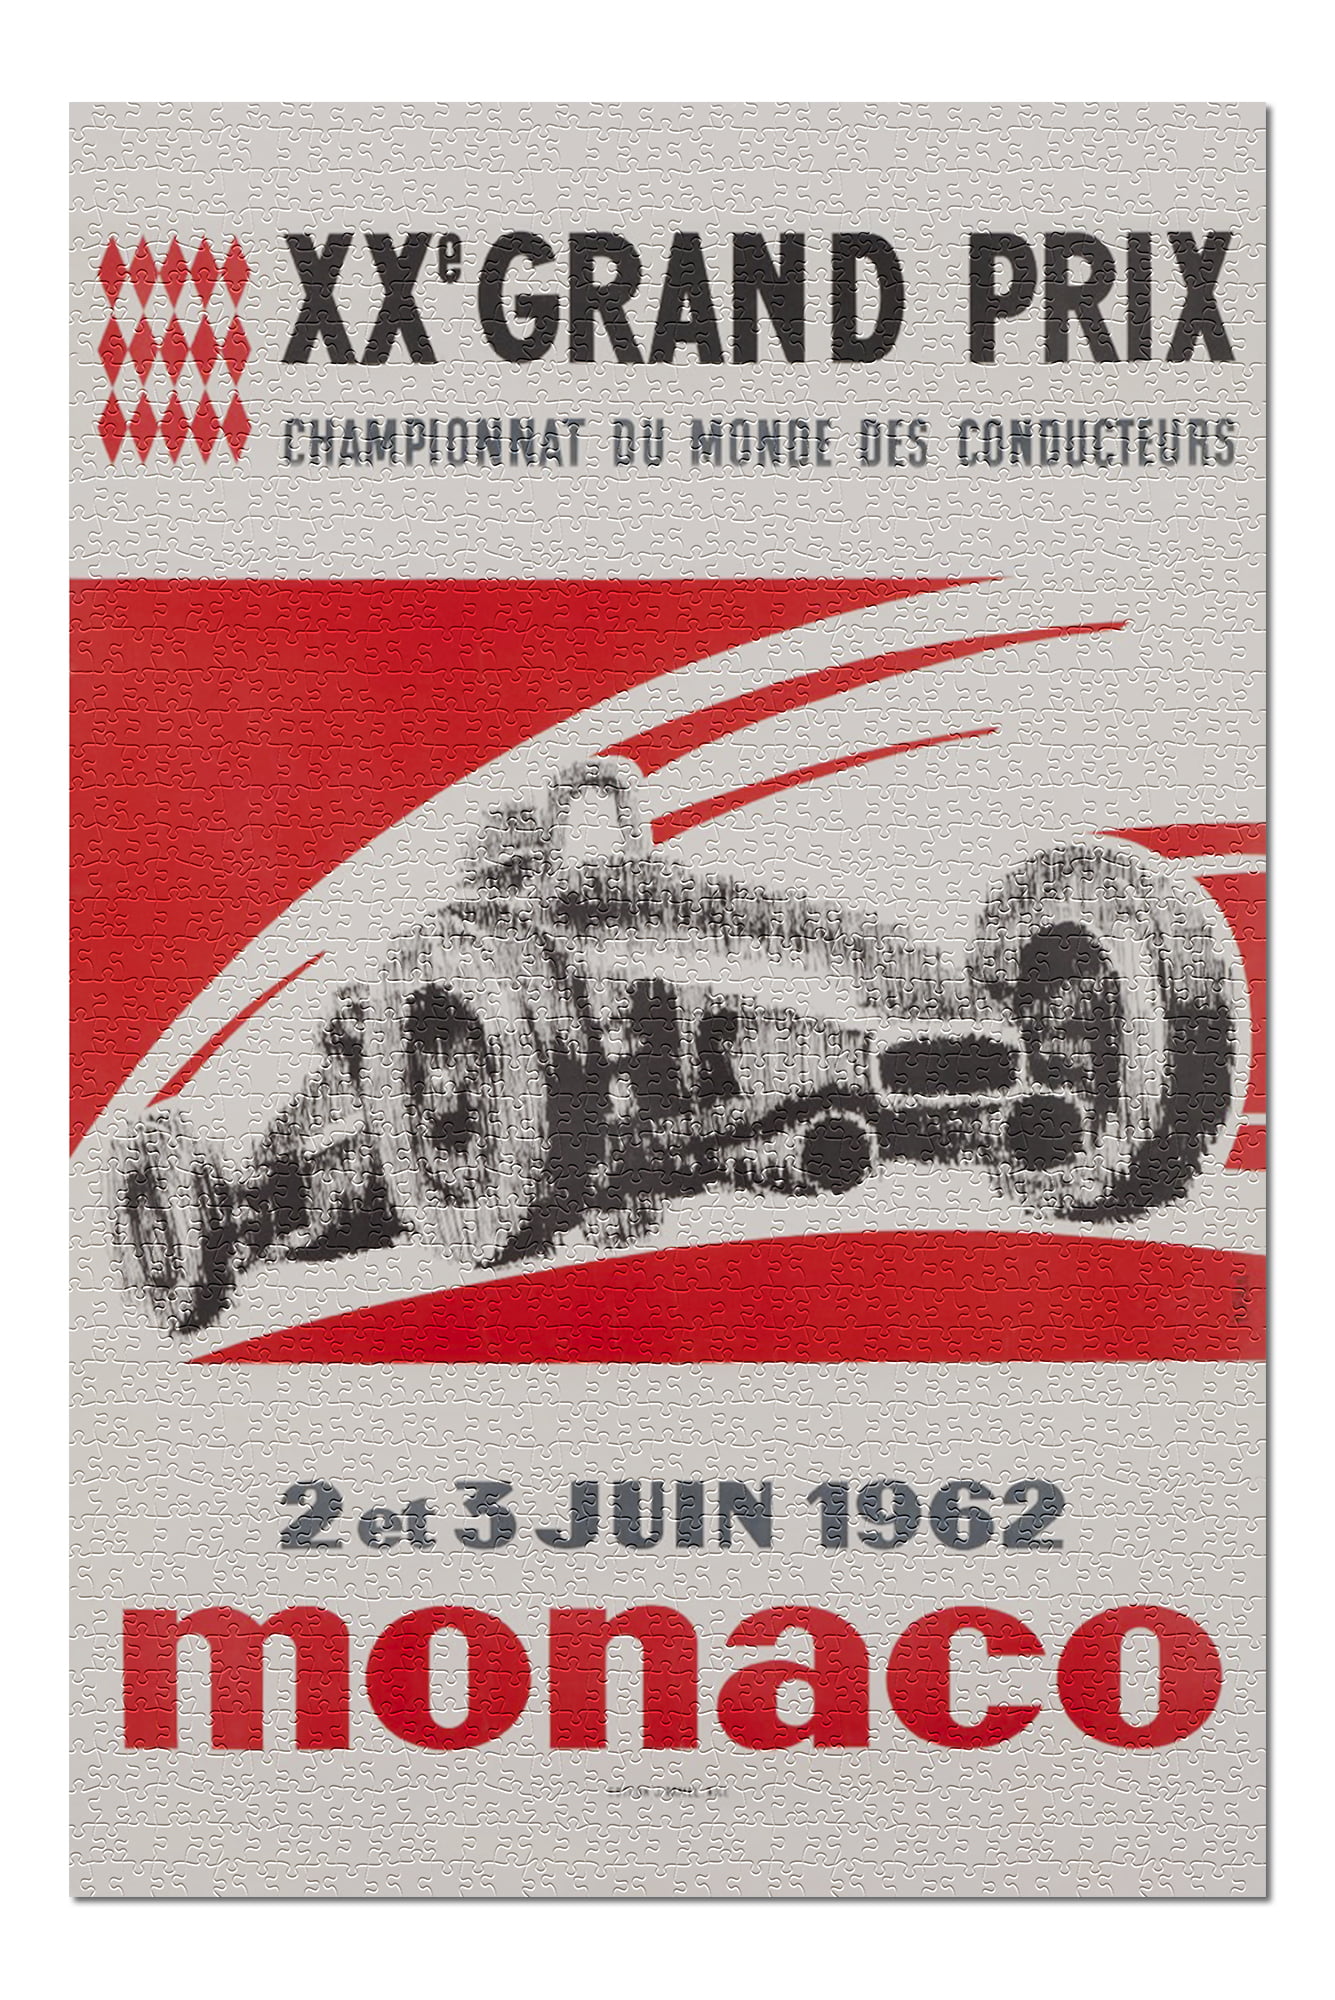 Details about  / bedroom bar club shop design Grand Prix de Monaco F1 1965 metal tin sign